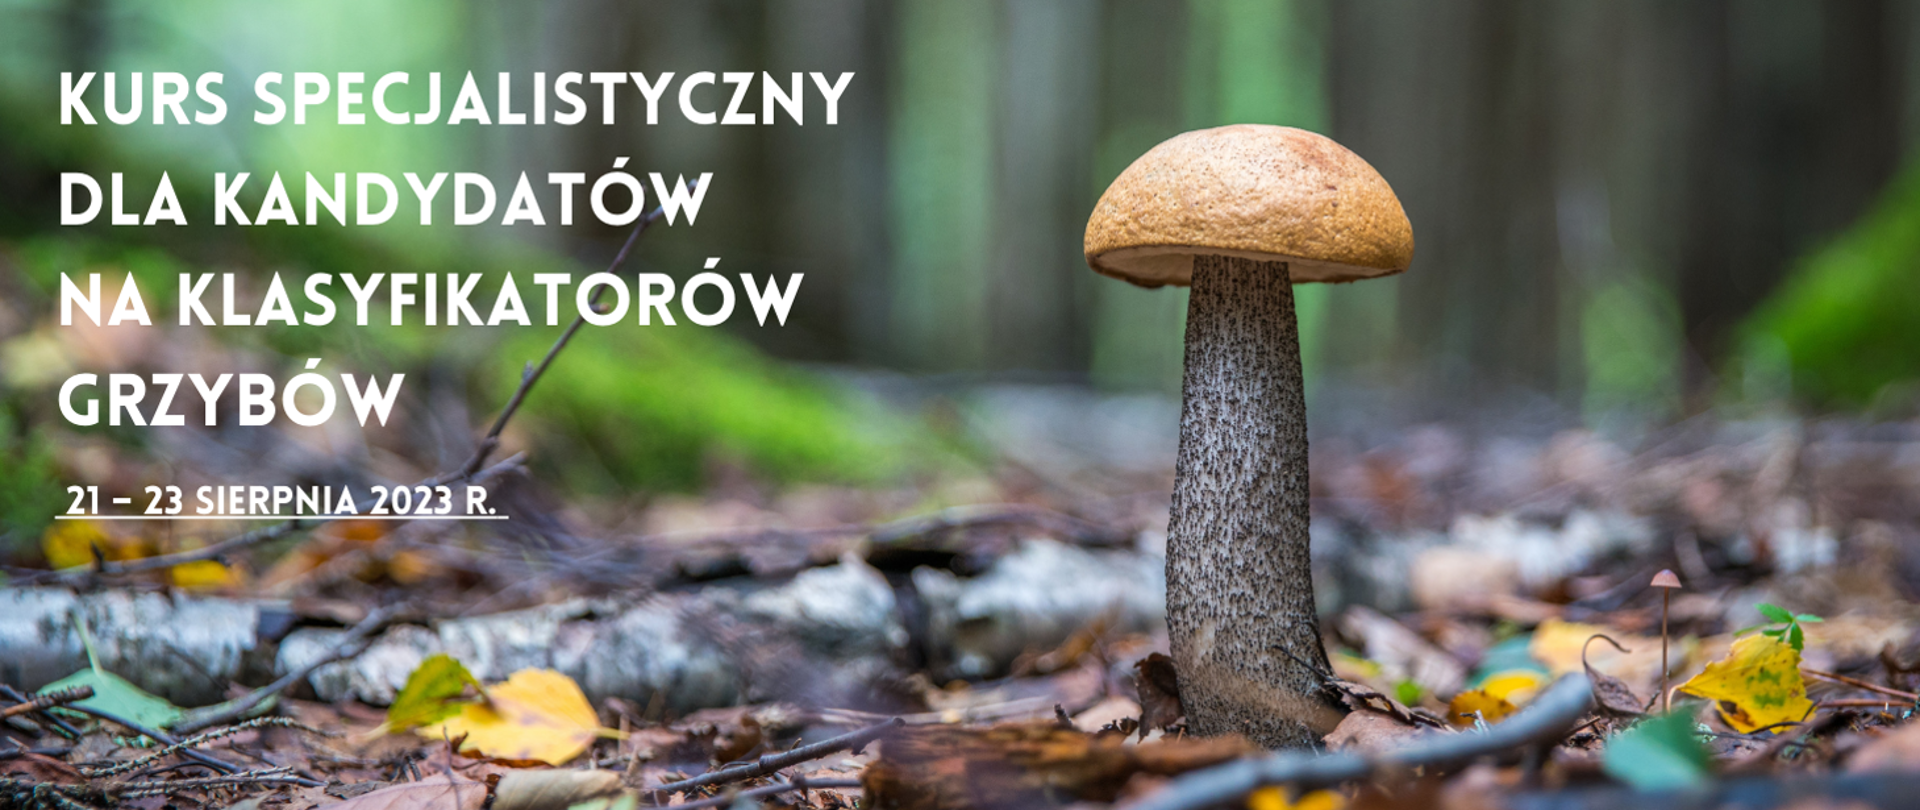 Zdjęcie przedstawia grzyba na tle lasu oraz napis: "Kurs specjalistyczny dla kandydatów na klasyfikatorów grzybów - 21-23 sierpnia 2023r."